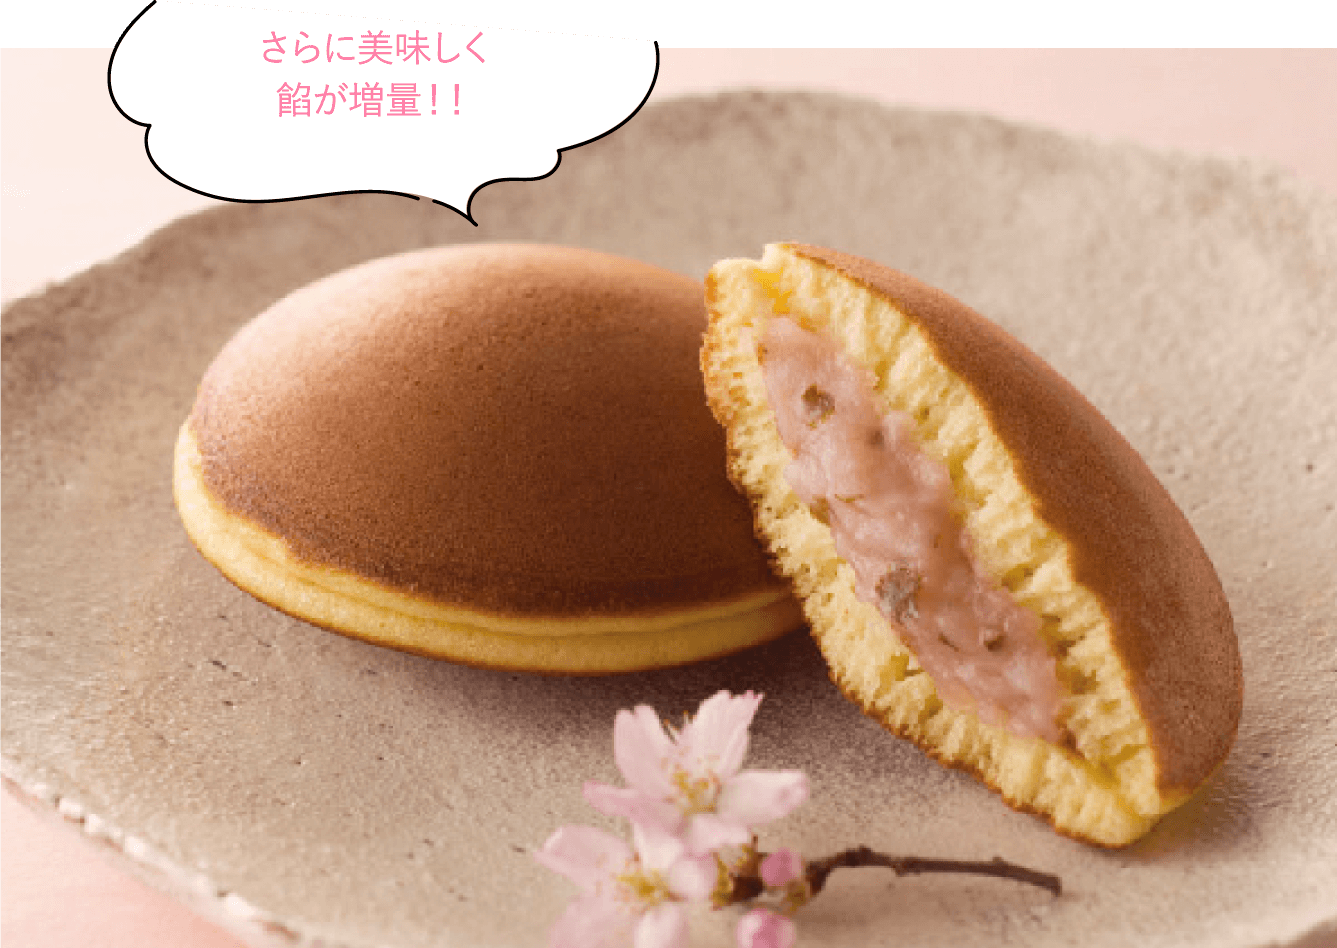 桜どら焼のイメージ写真